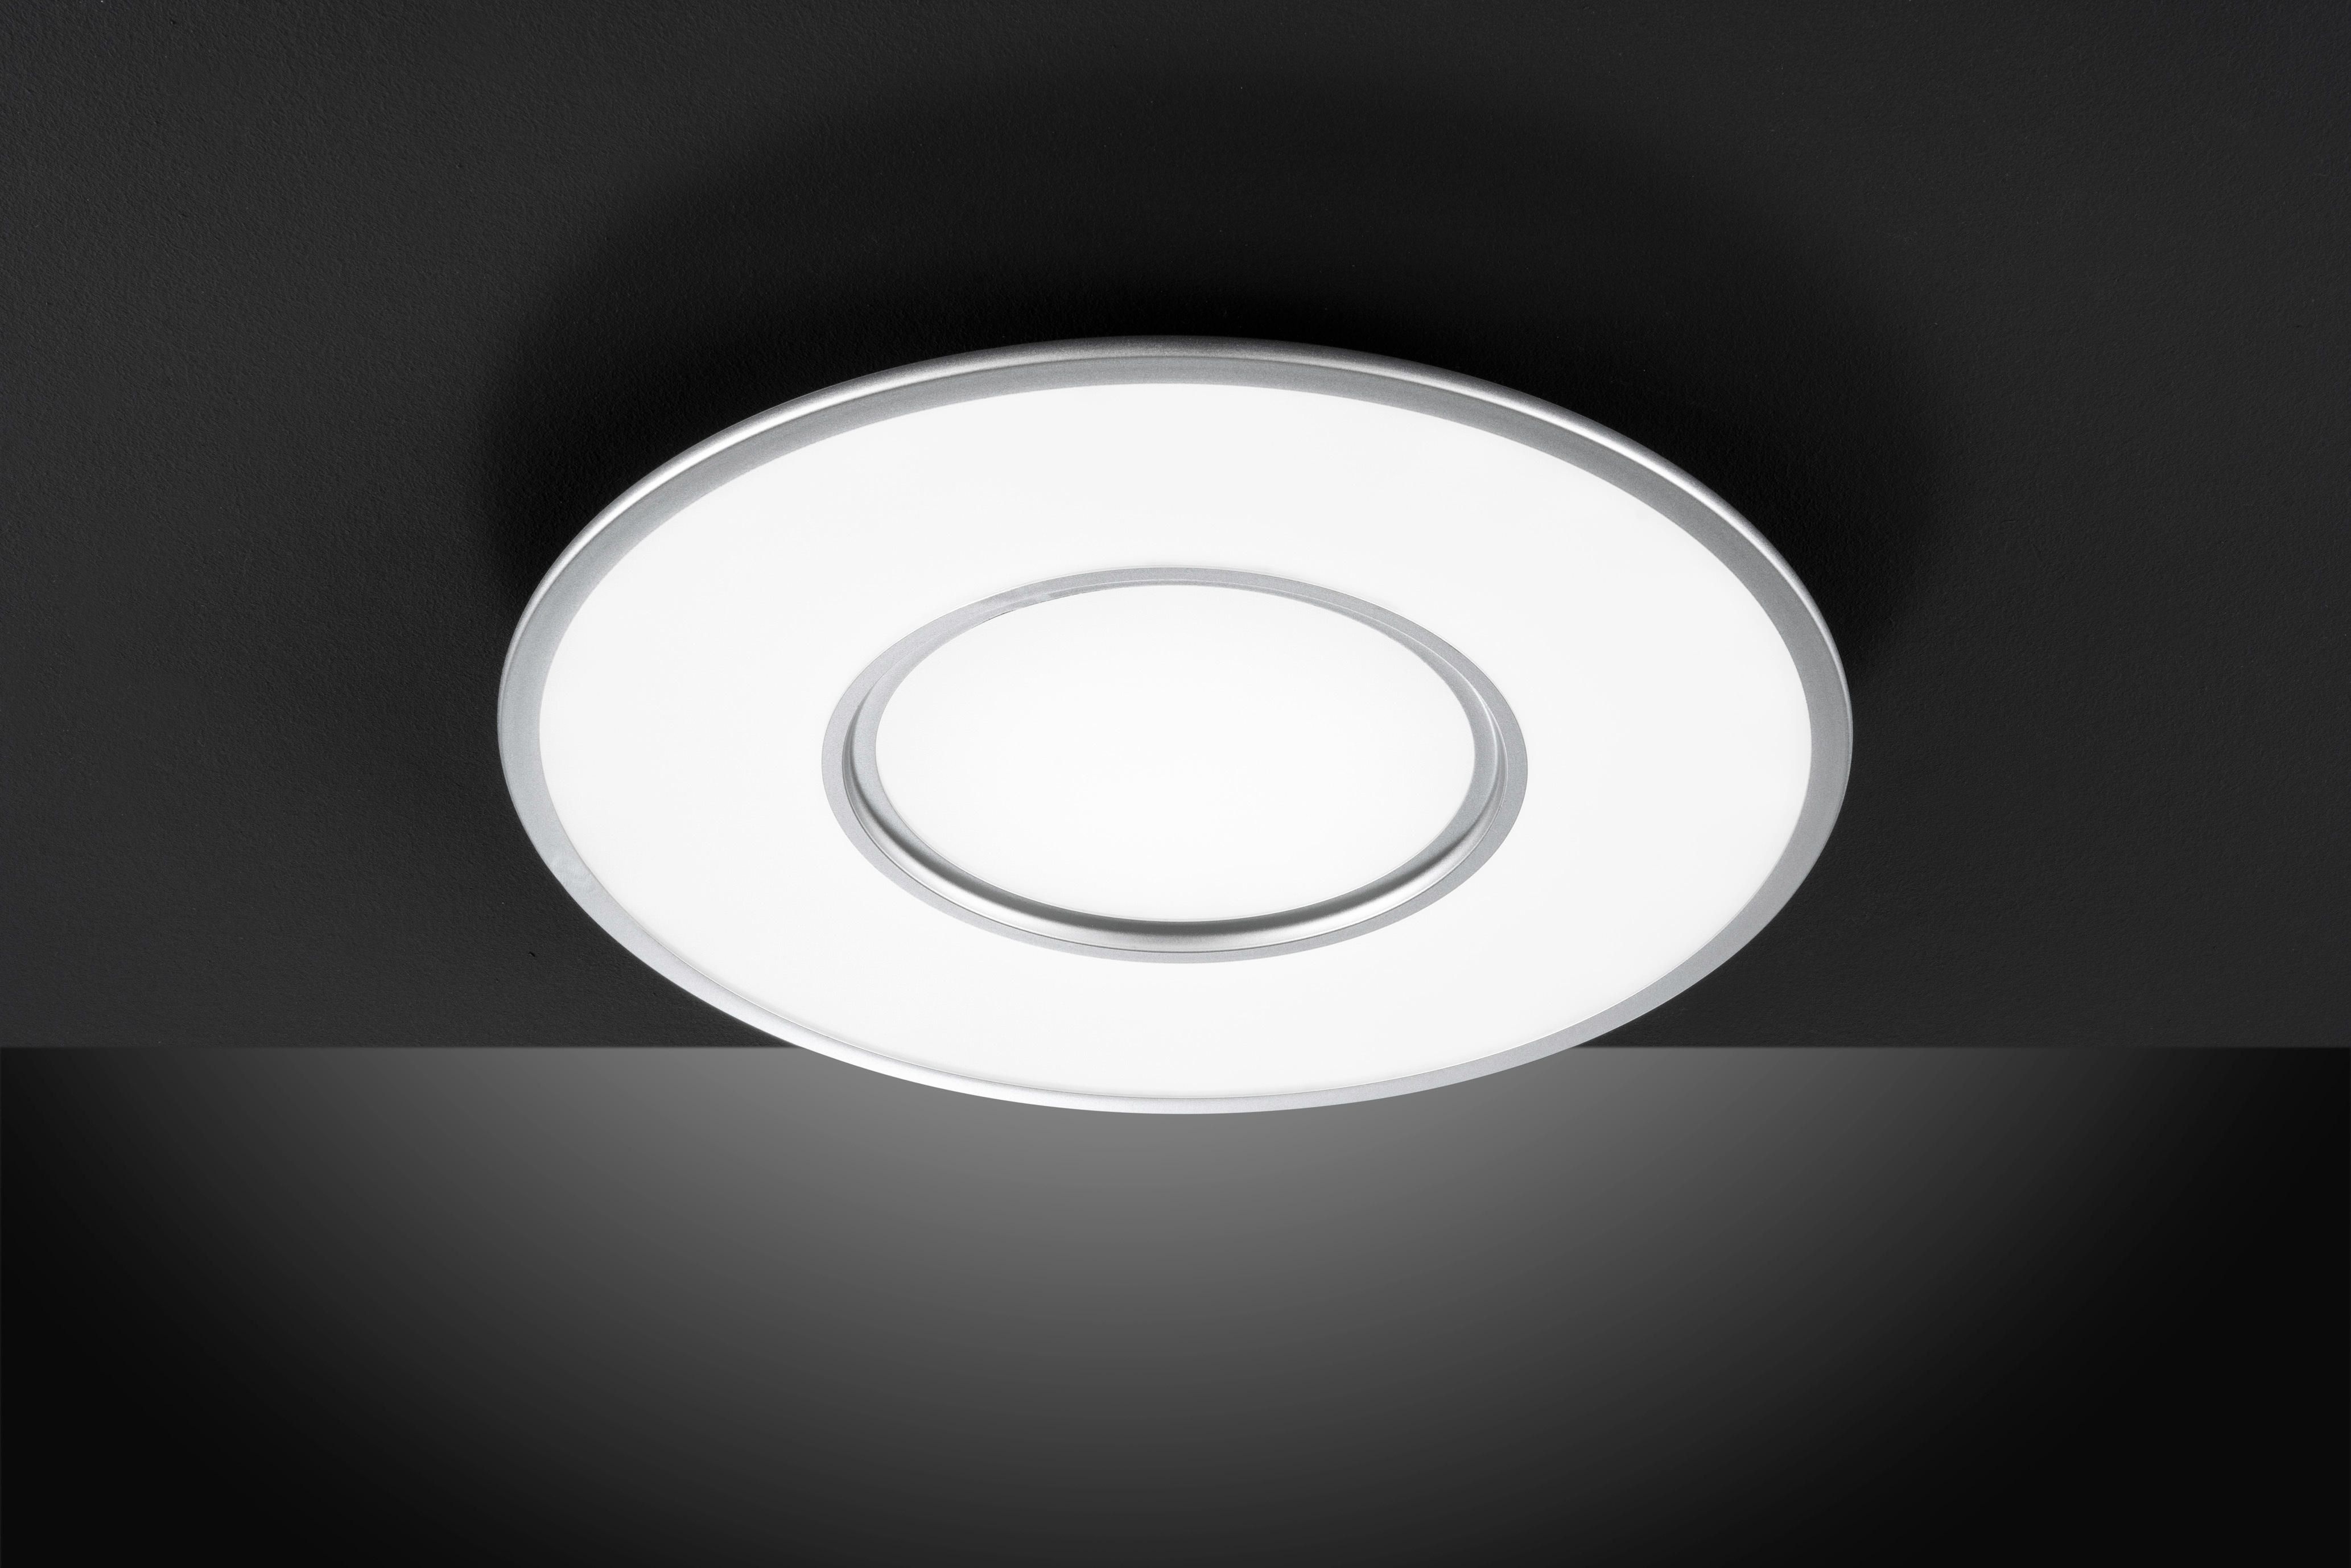 LED-DECKENLEUCHTE  - Silberfarben/Weiß, Design, Kunststoff/Metall (60/5,2cm) - Novel